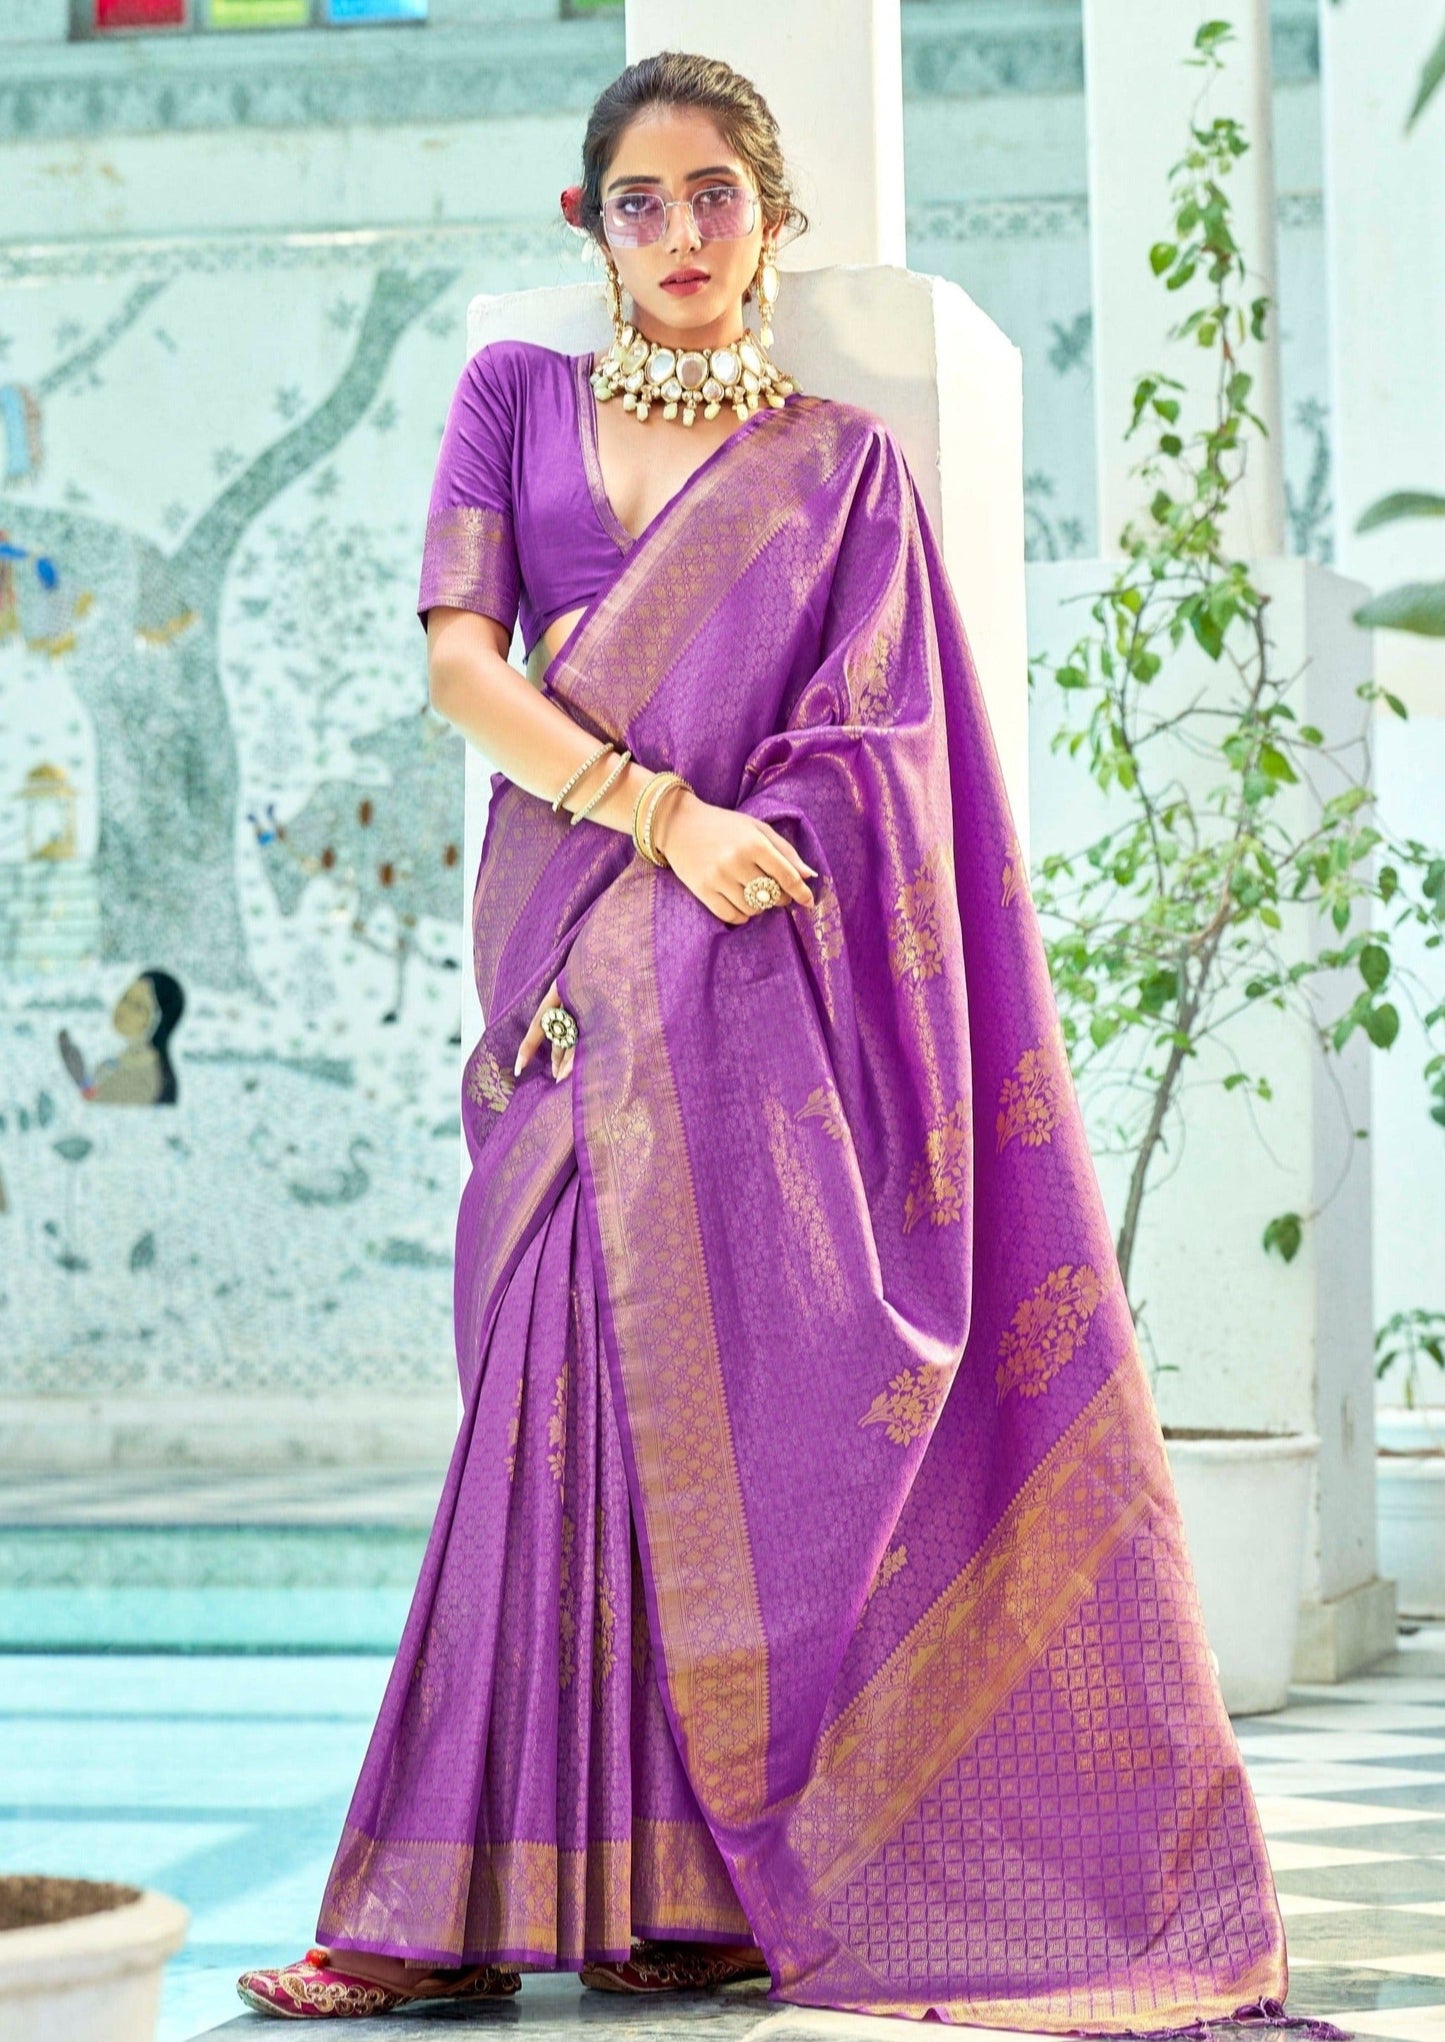 Luxury sarees india uk usa online shopping.